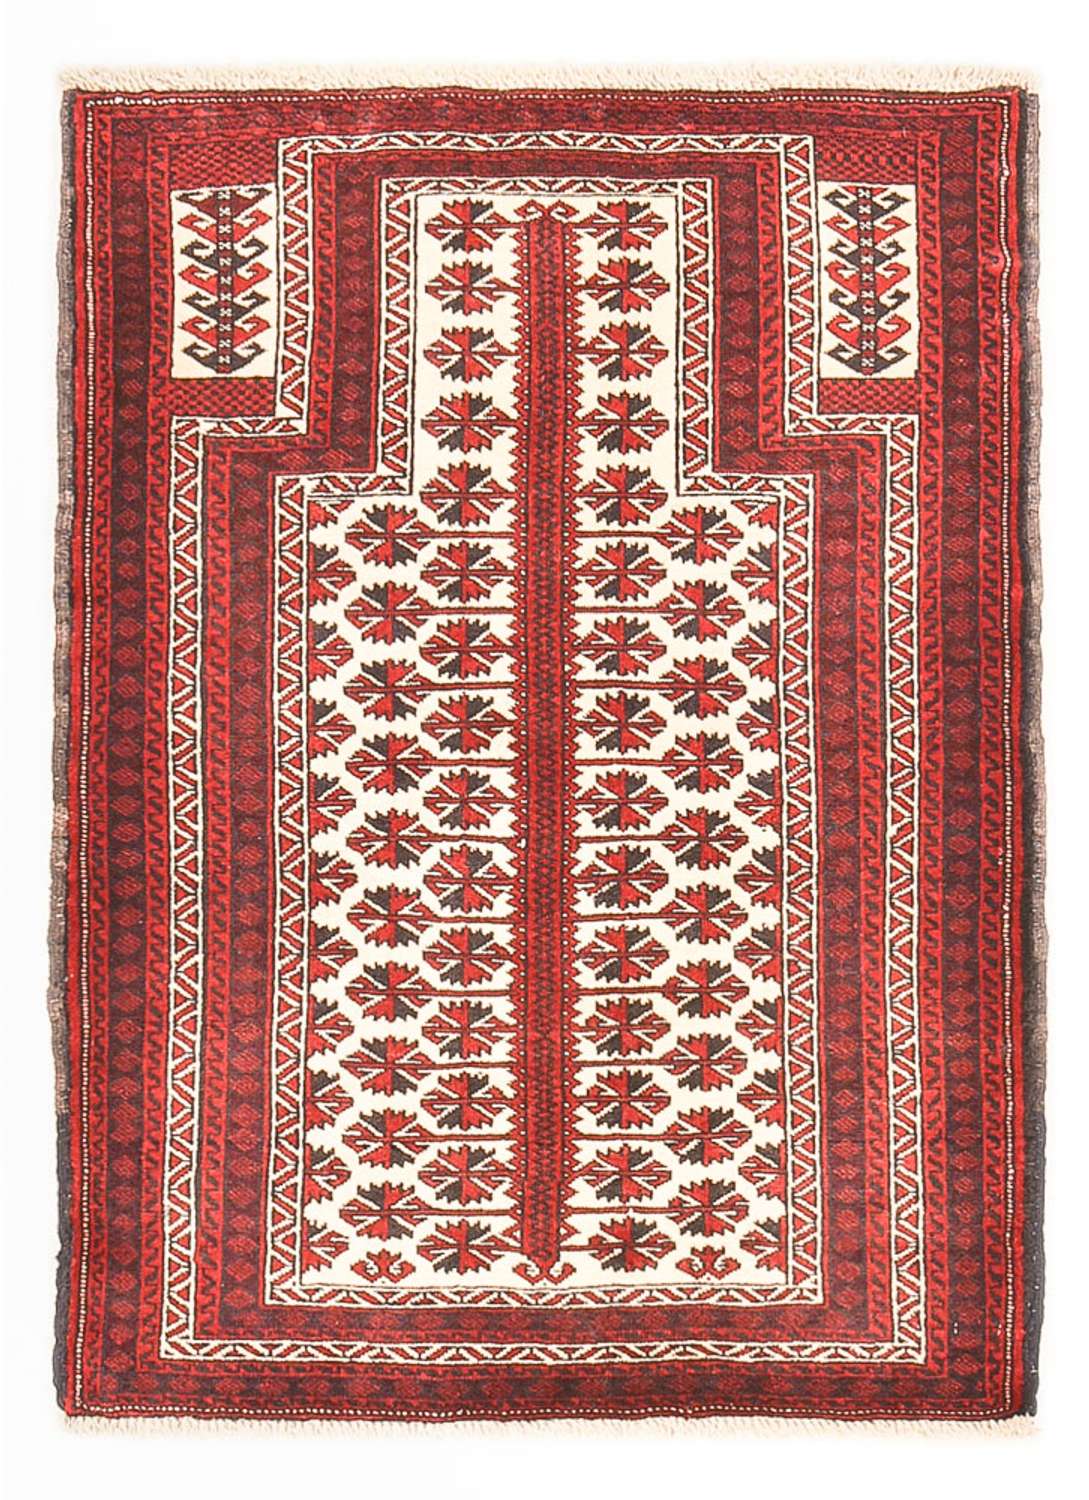 Dywan beludżycki - 137 x 100 cm - wielokolorowy